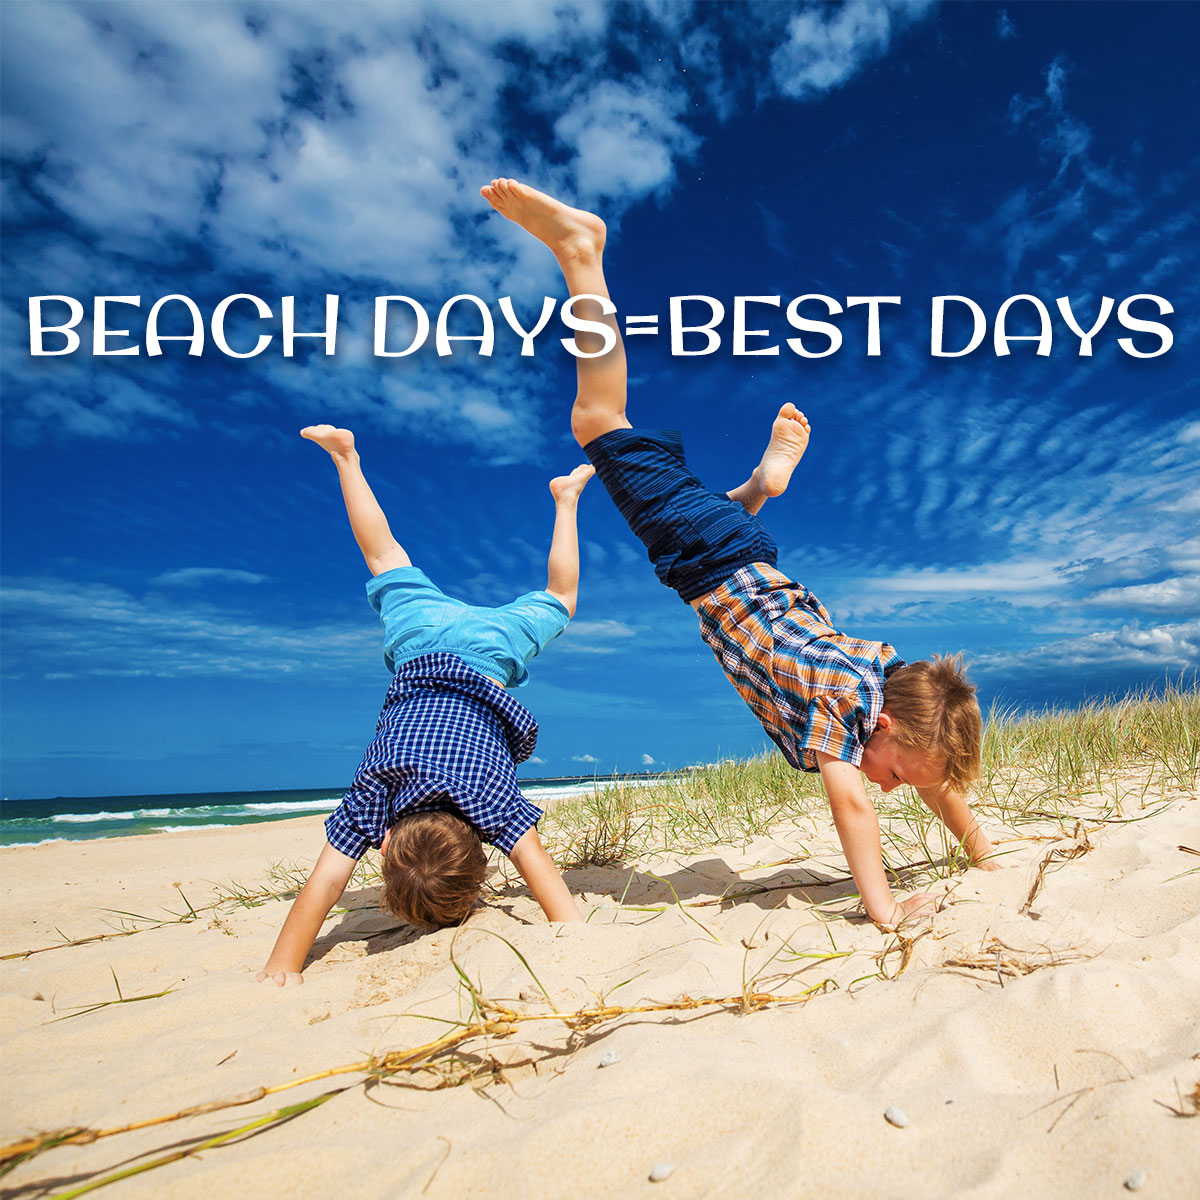 Beach Days=Best Days